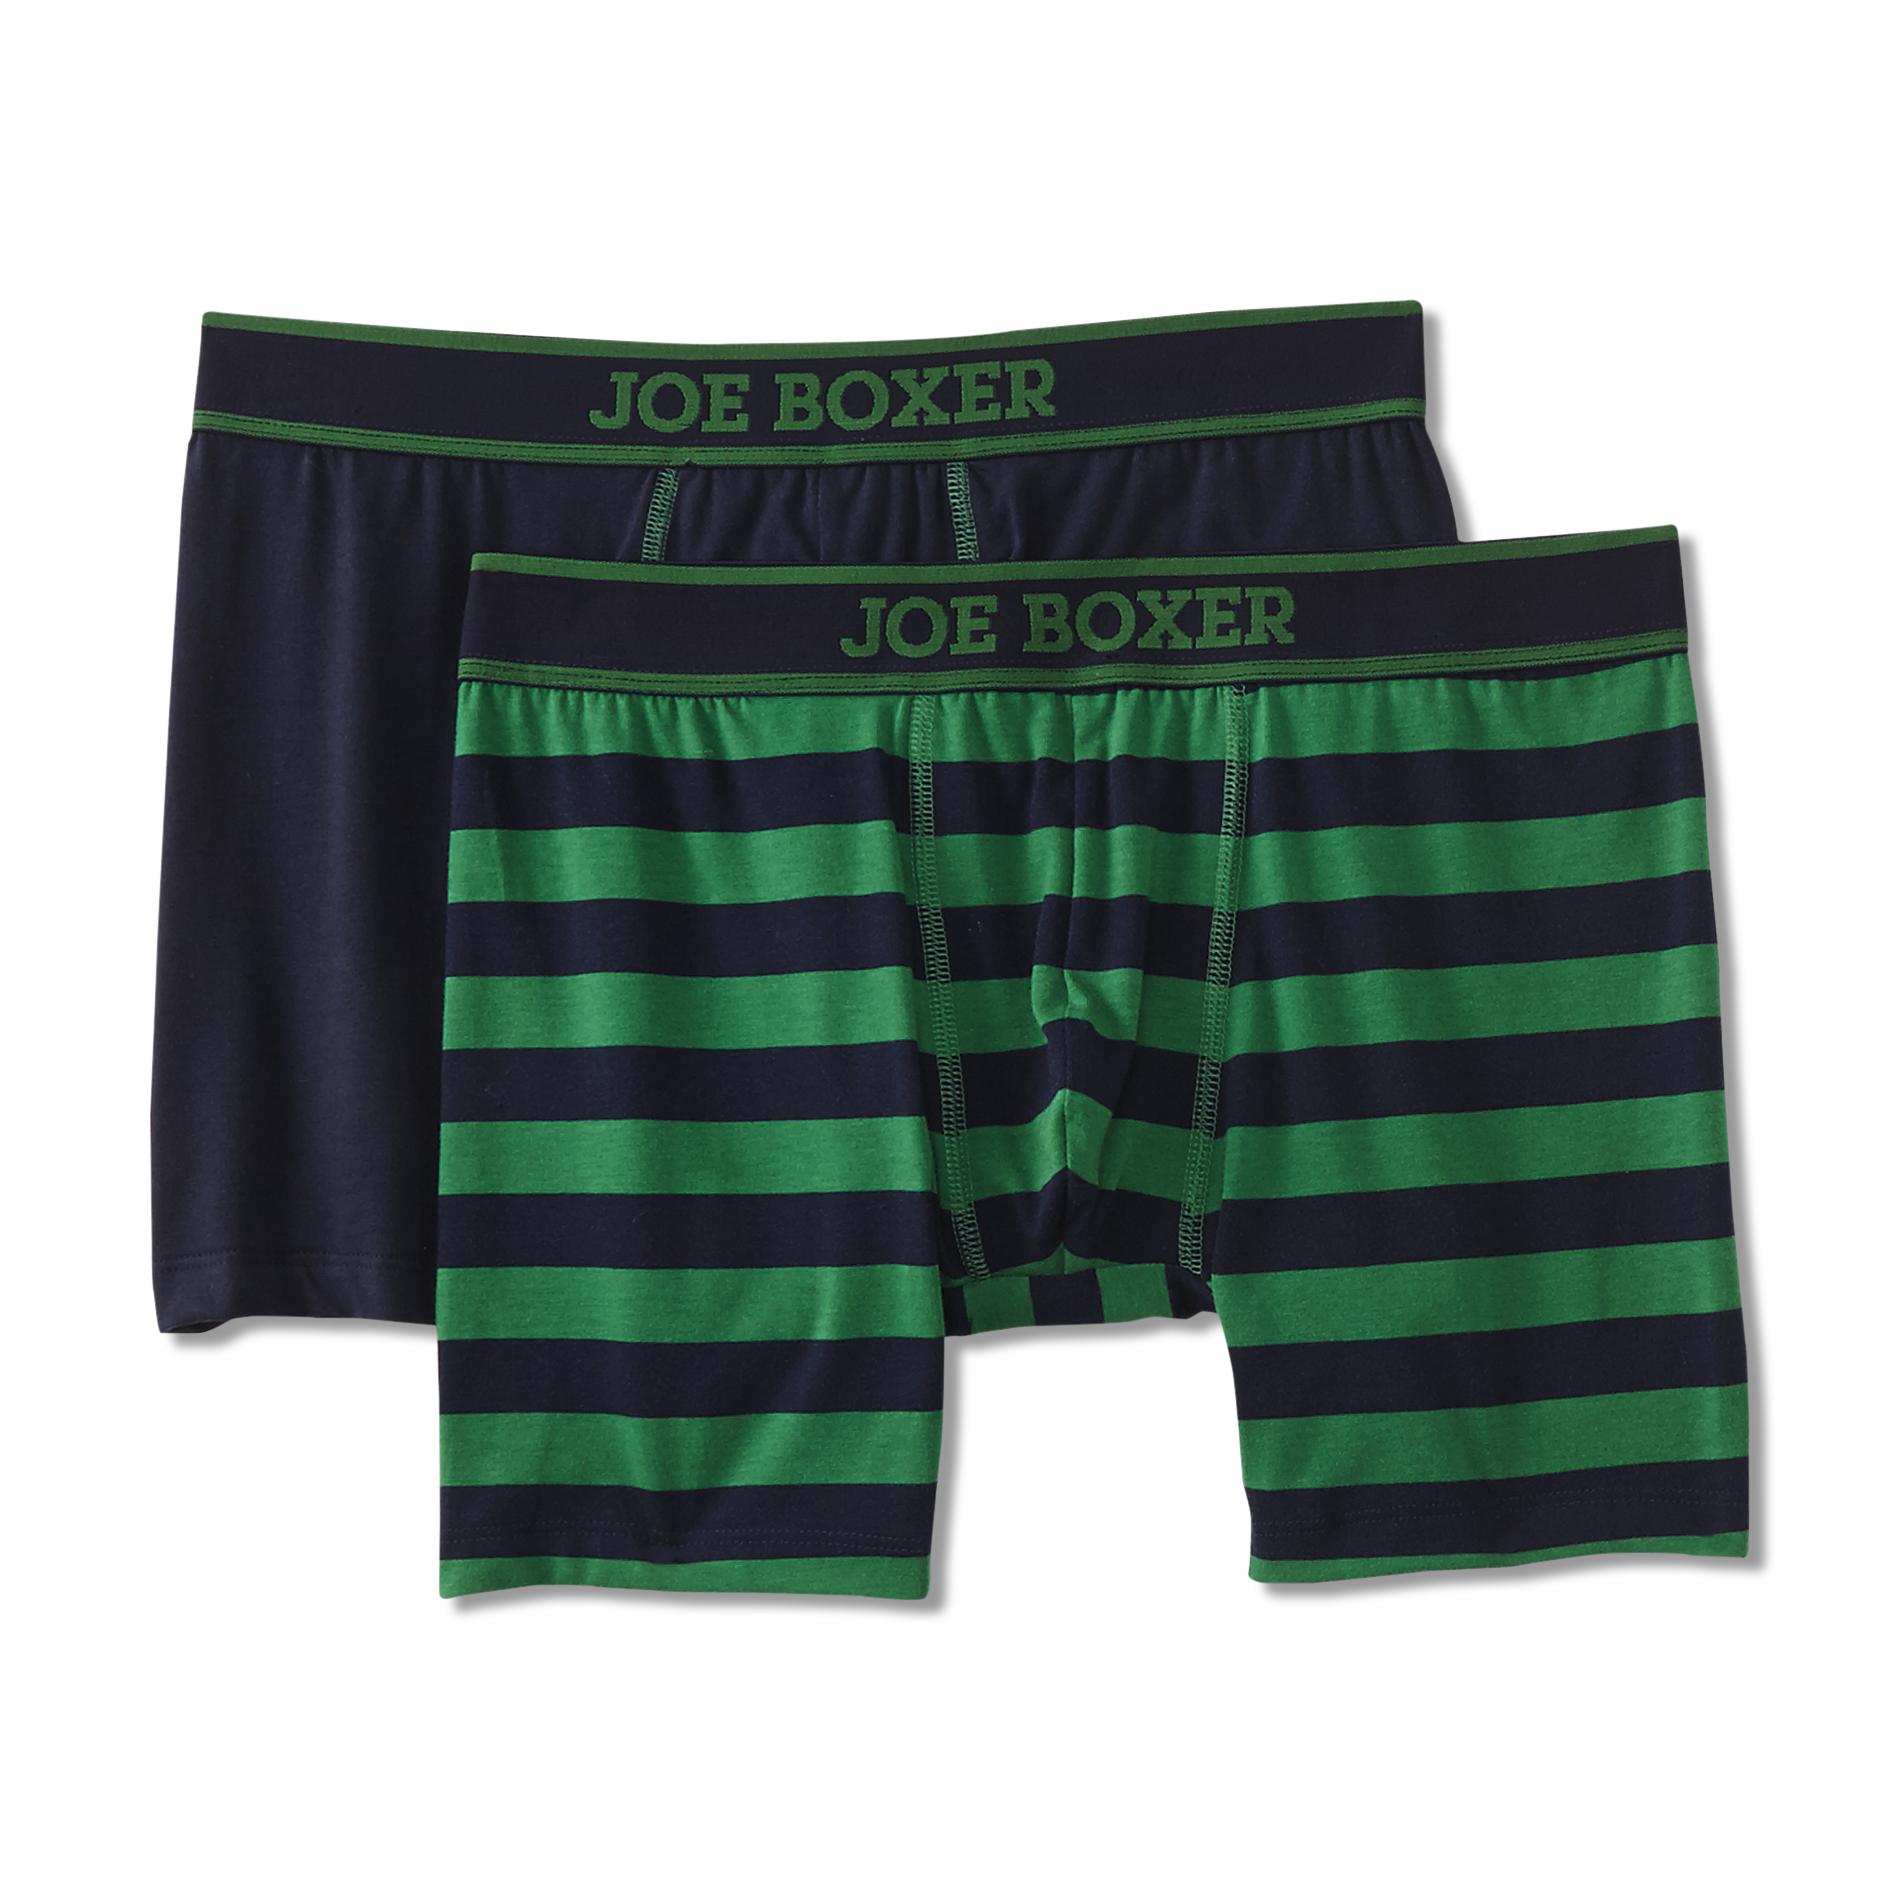 Joe Boxer Men's 2-Pack Boxer Briefs - Striped